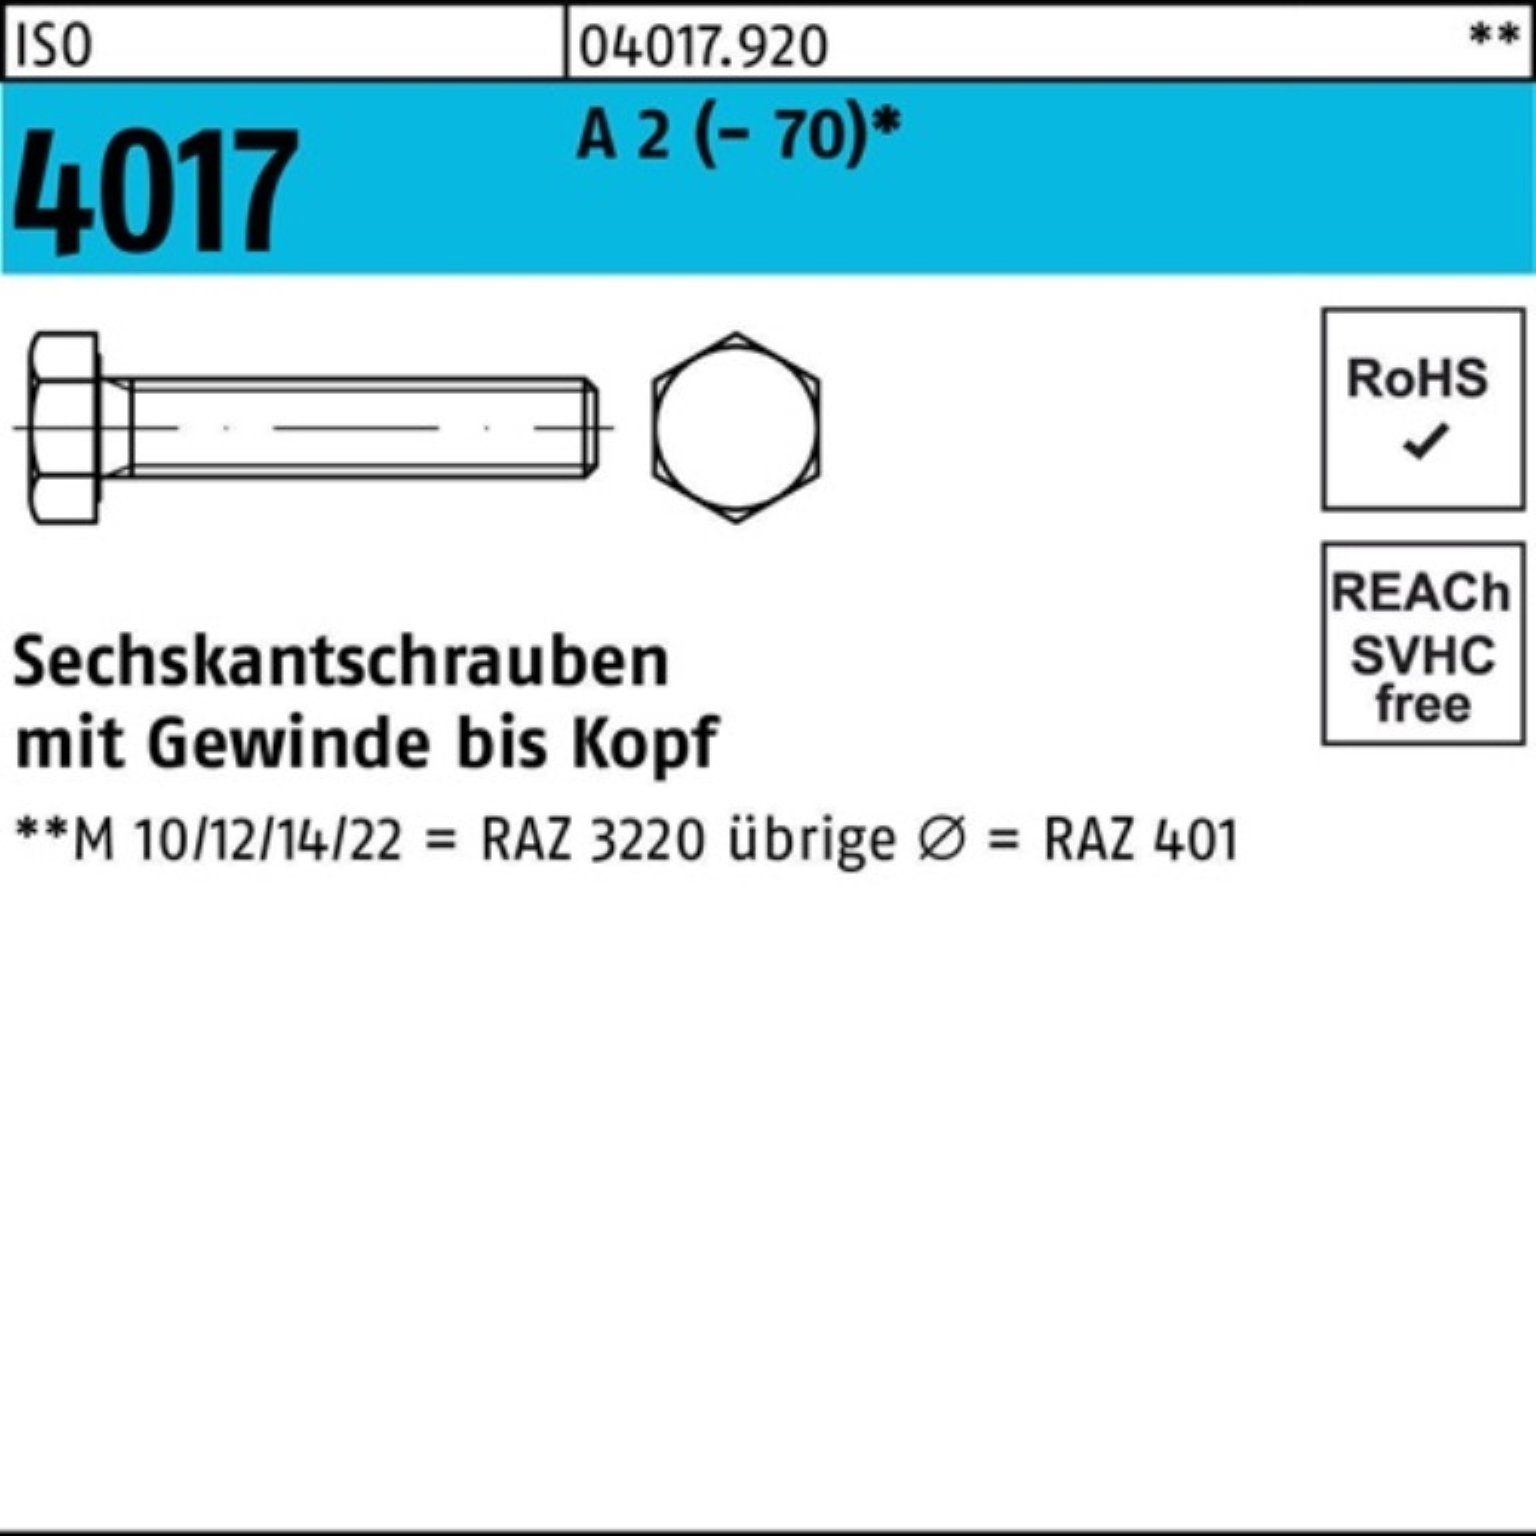 Bufab Sechskantschraube 100er Pack Sechskantschraube ISO 4017 VG M3x 10 A 2 (70) 100 Stück